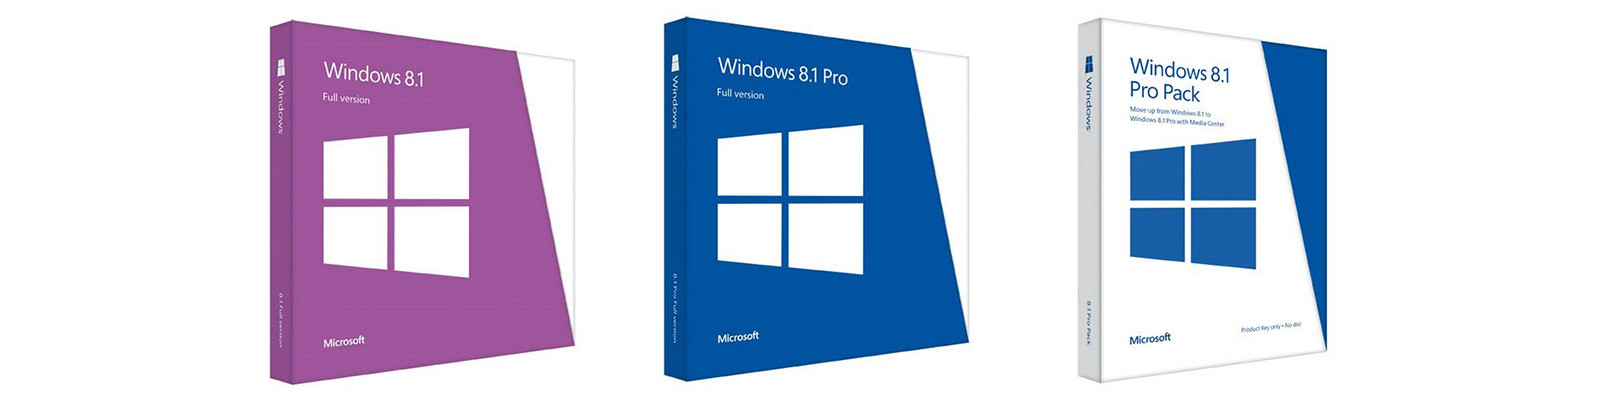 Porcellana il la cosa migliore Chiave della licenza di Microsoft Windows 7 sulle vendite